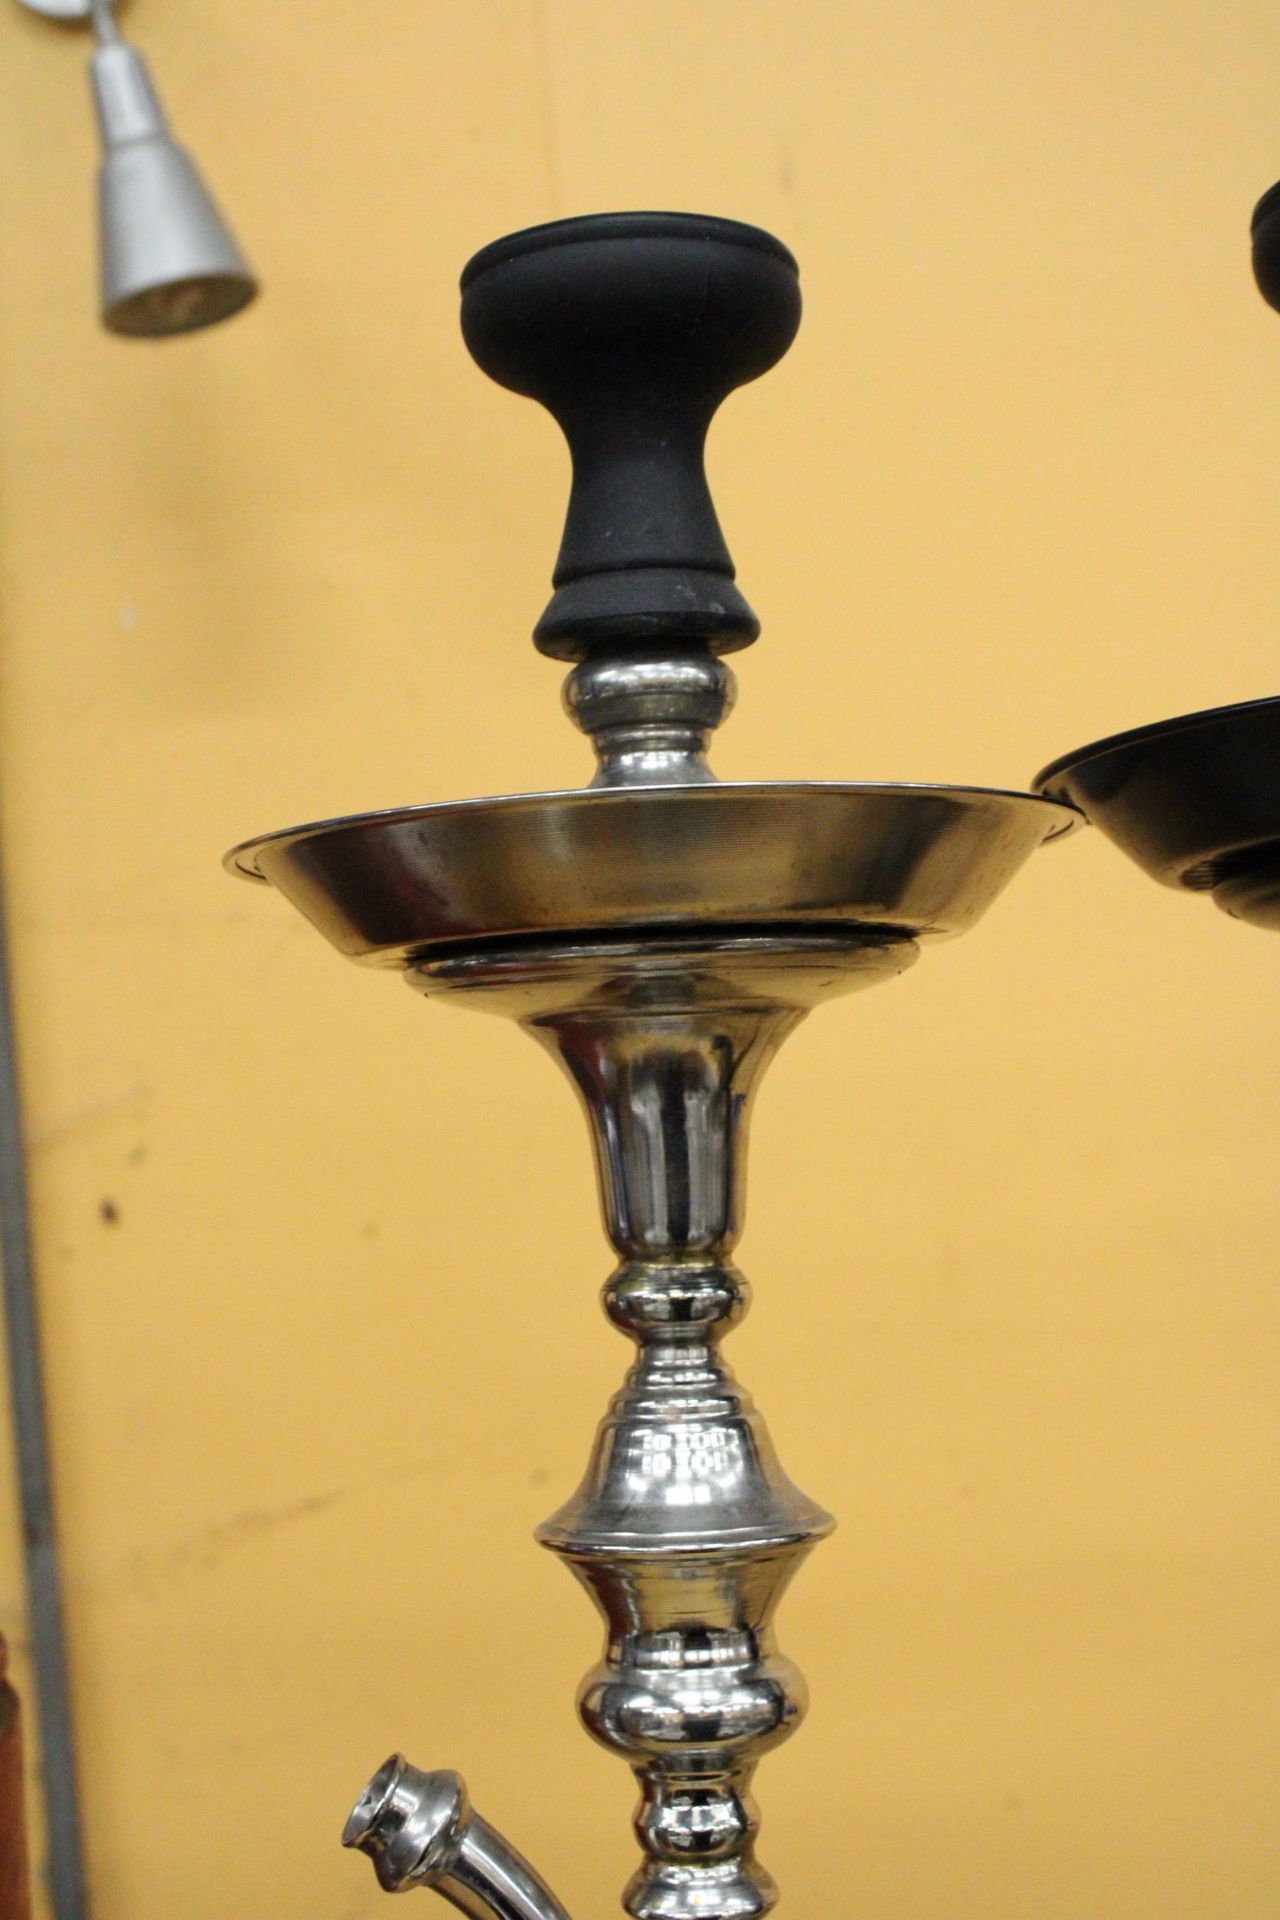 TWO GLASS AND METAL SHISHA PIPES - Image 2 of 6